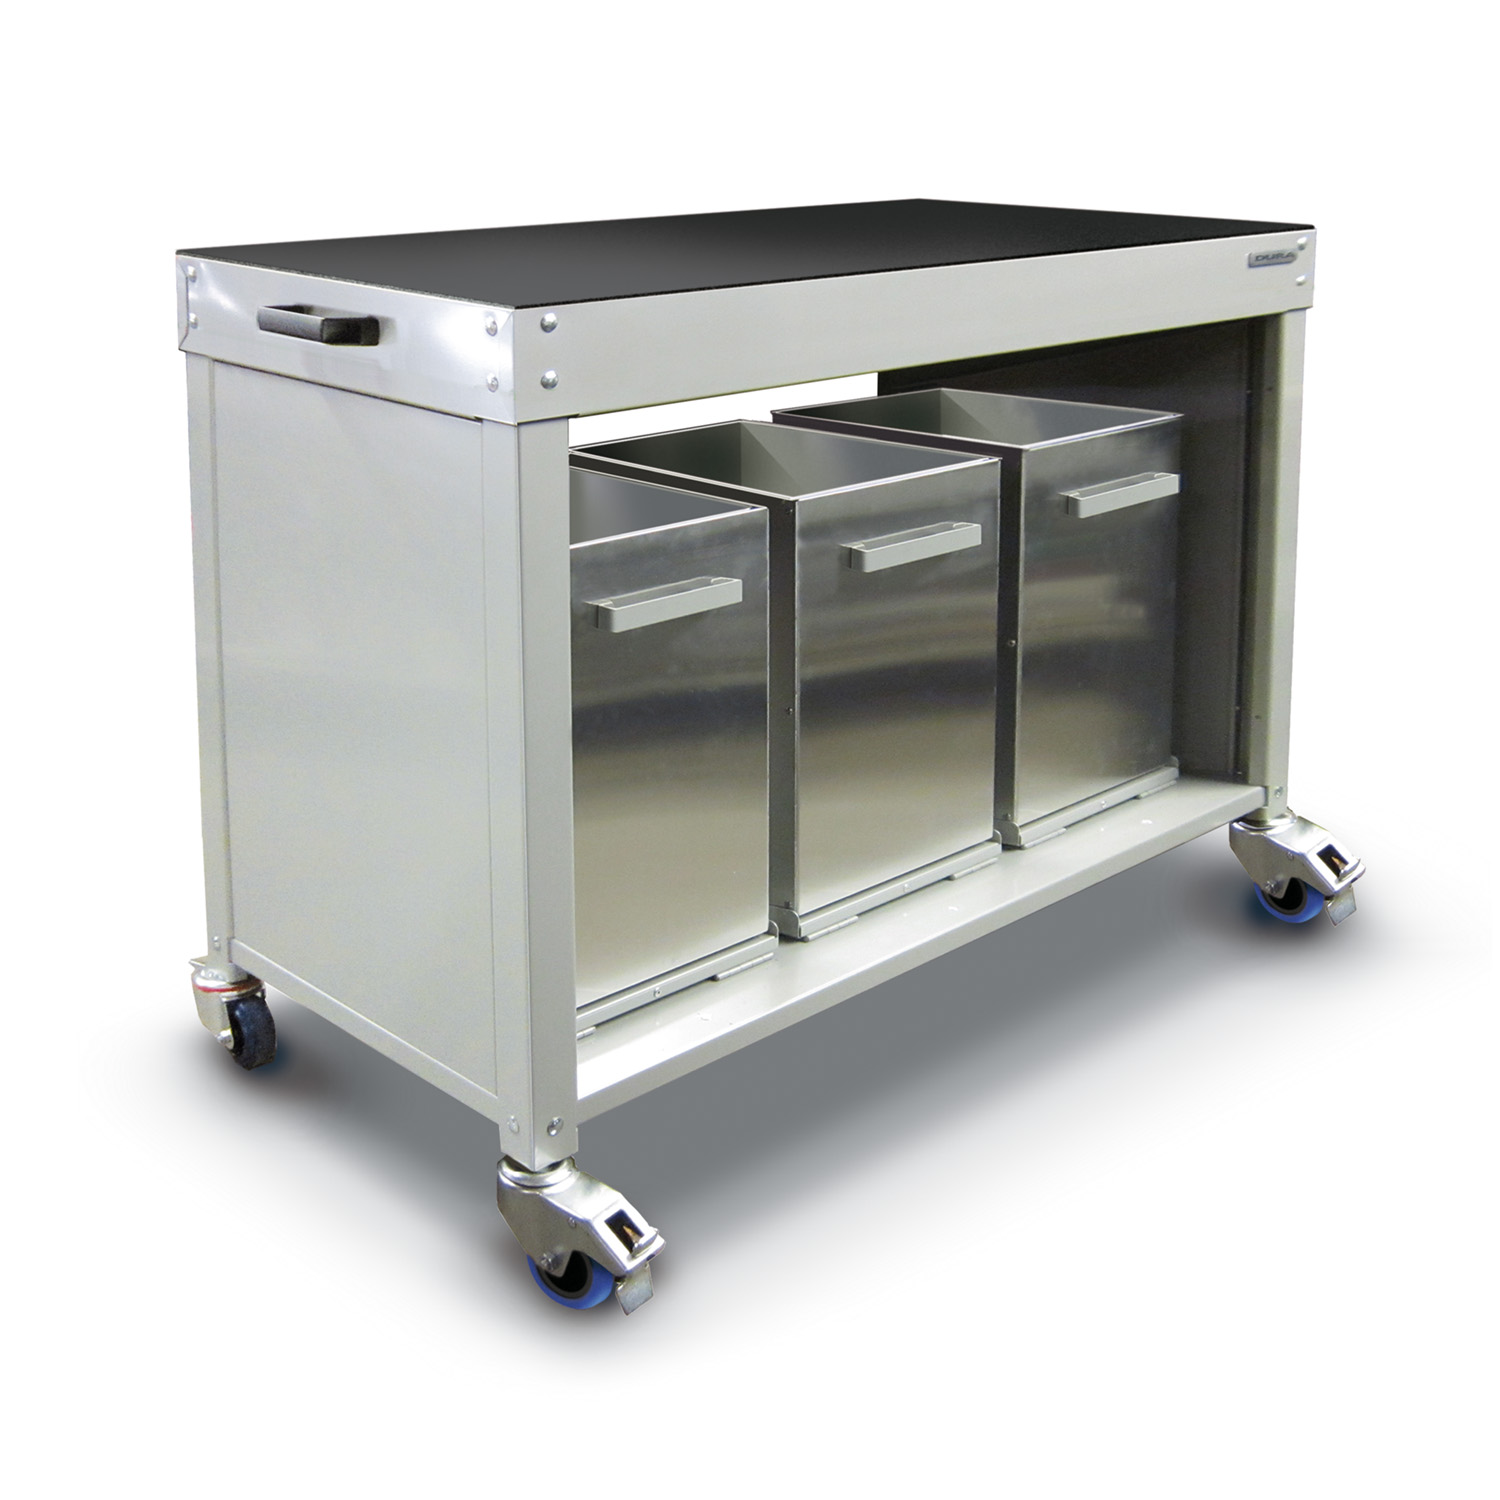 Mobile double-sided wastebin cabinet